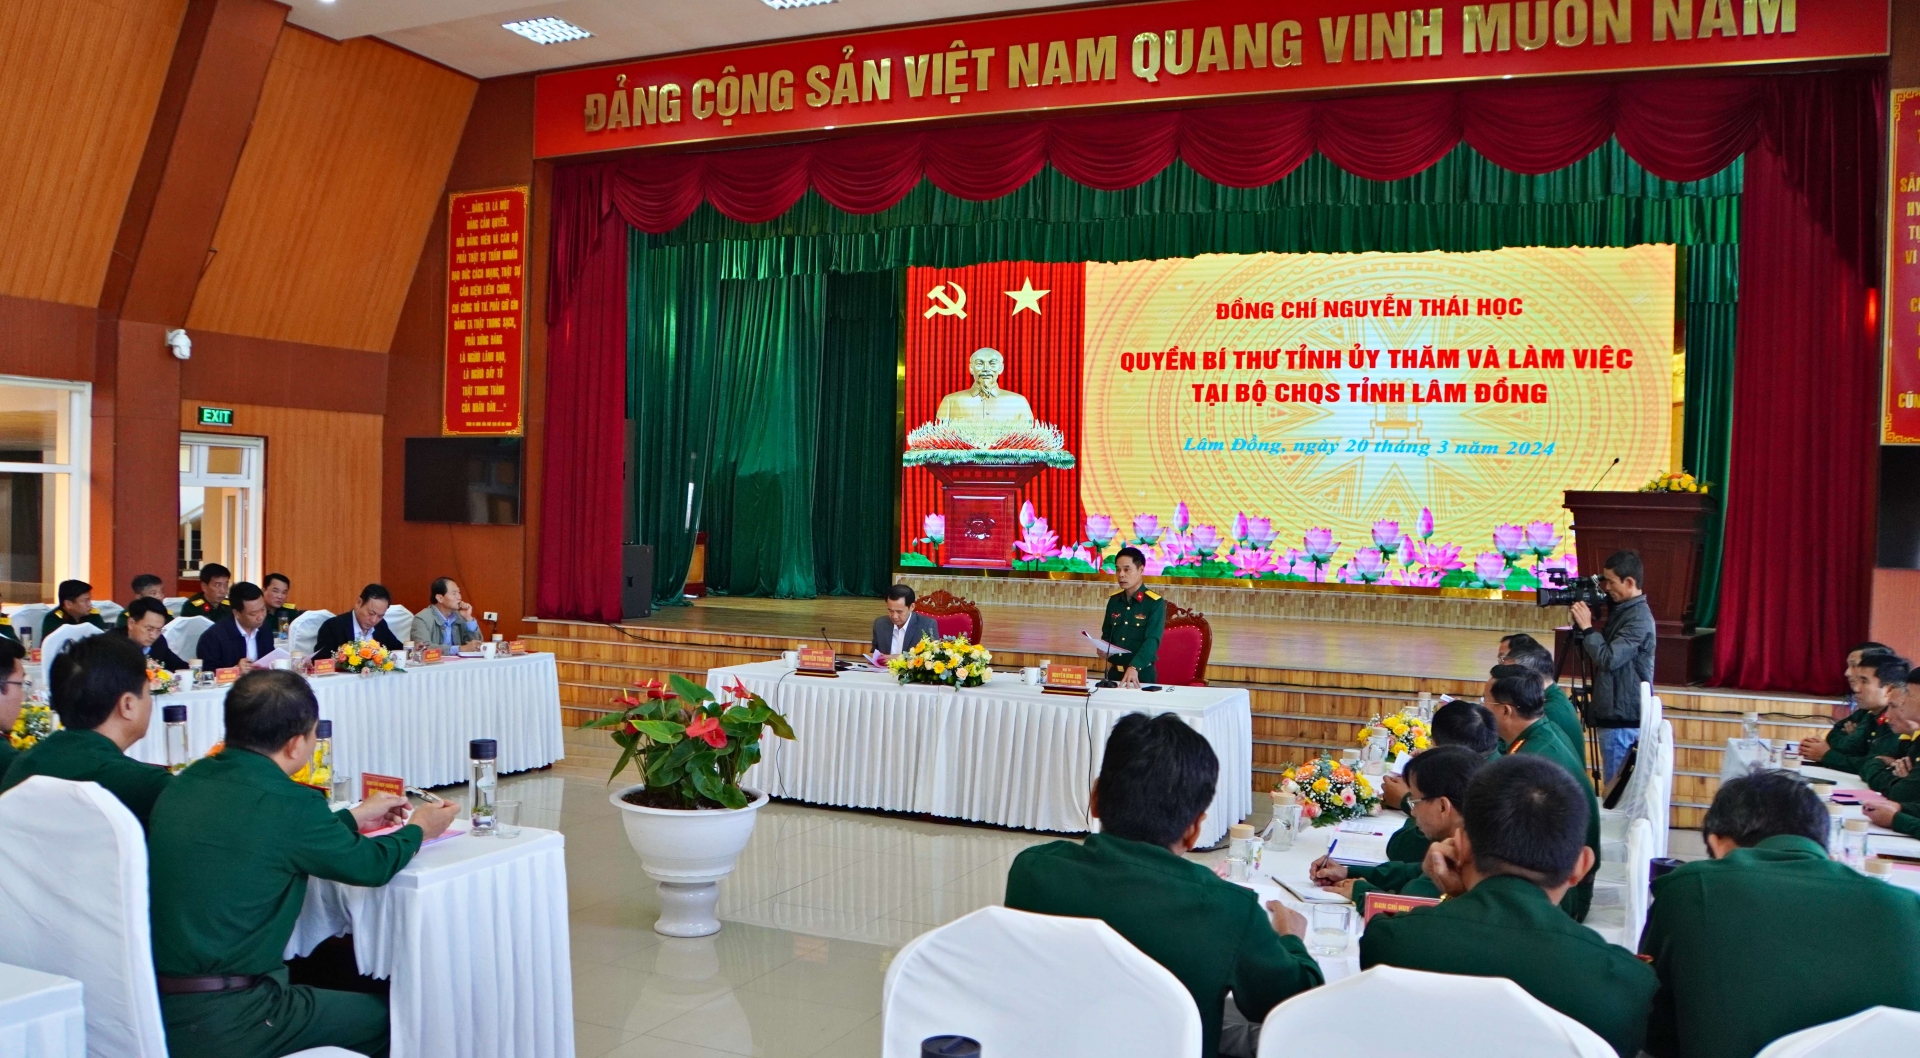 Quang cảnh buổi làm việc của đồng chí Nguyễn Thái Học - Quyền Bí thư Tỉnh uỷ Lâm Đồng với Bộ CHQS tỉnh